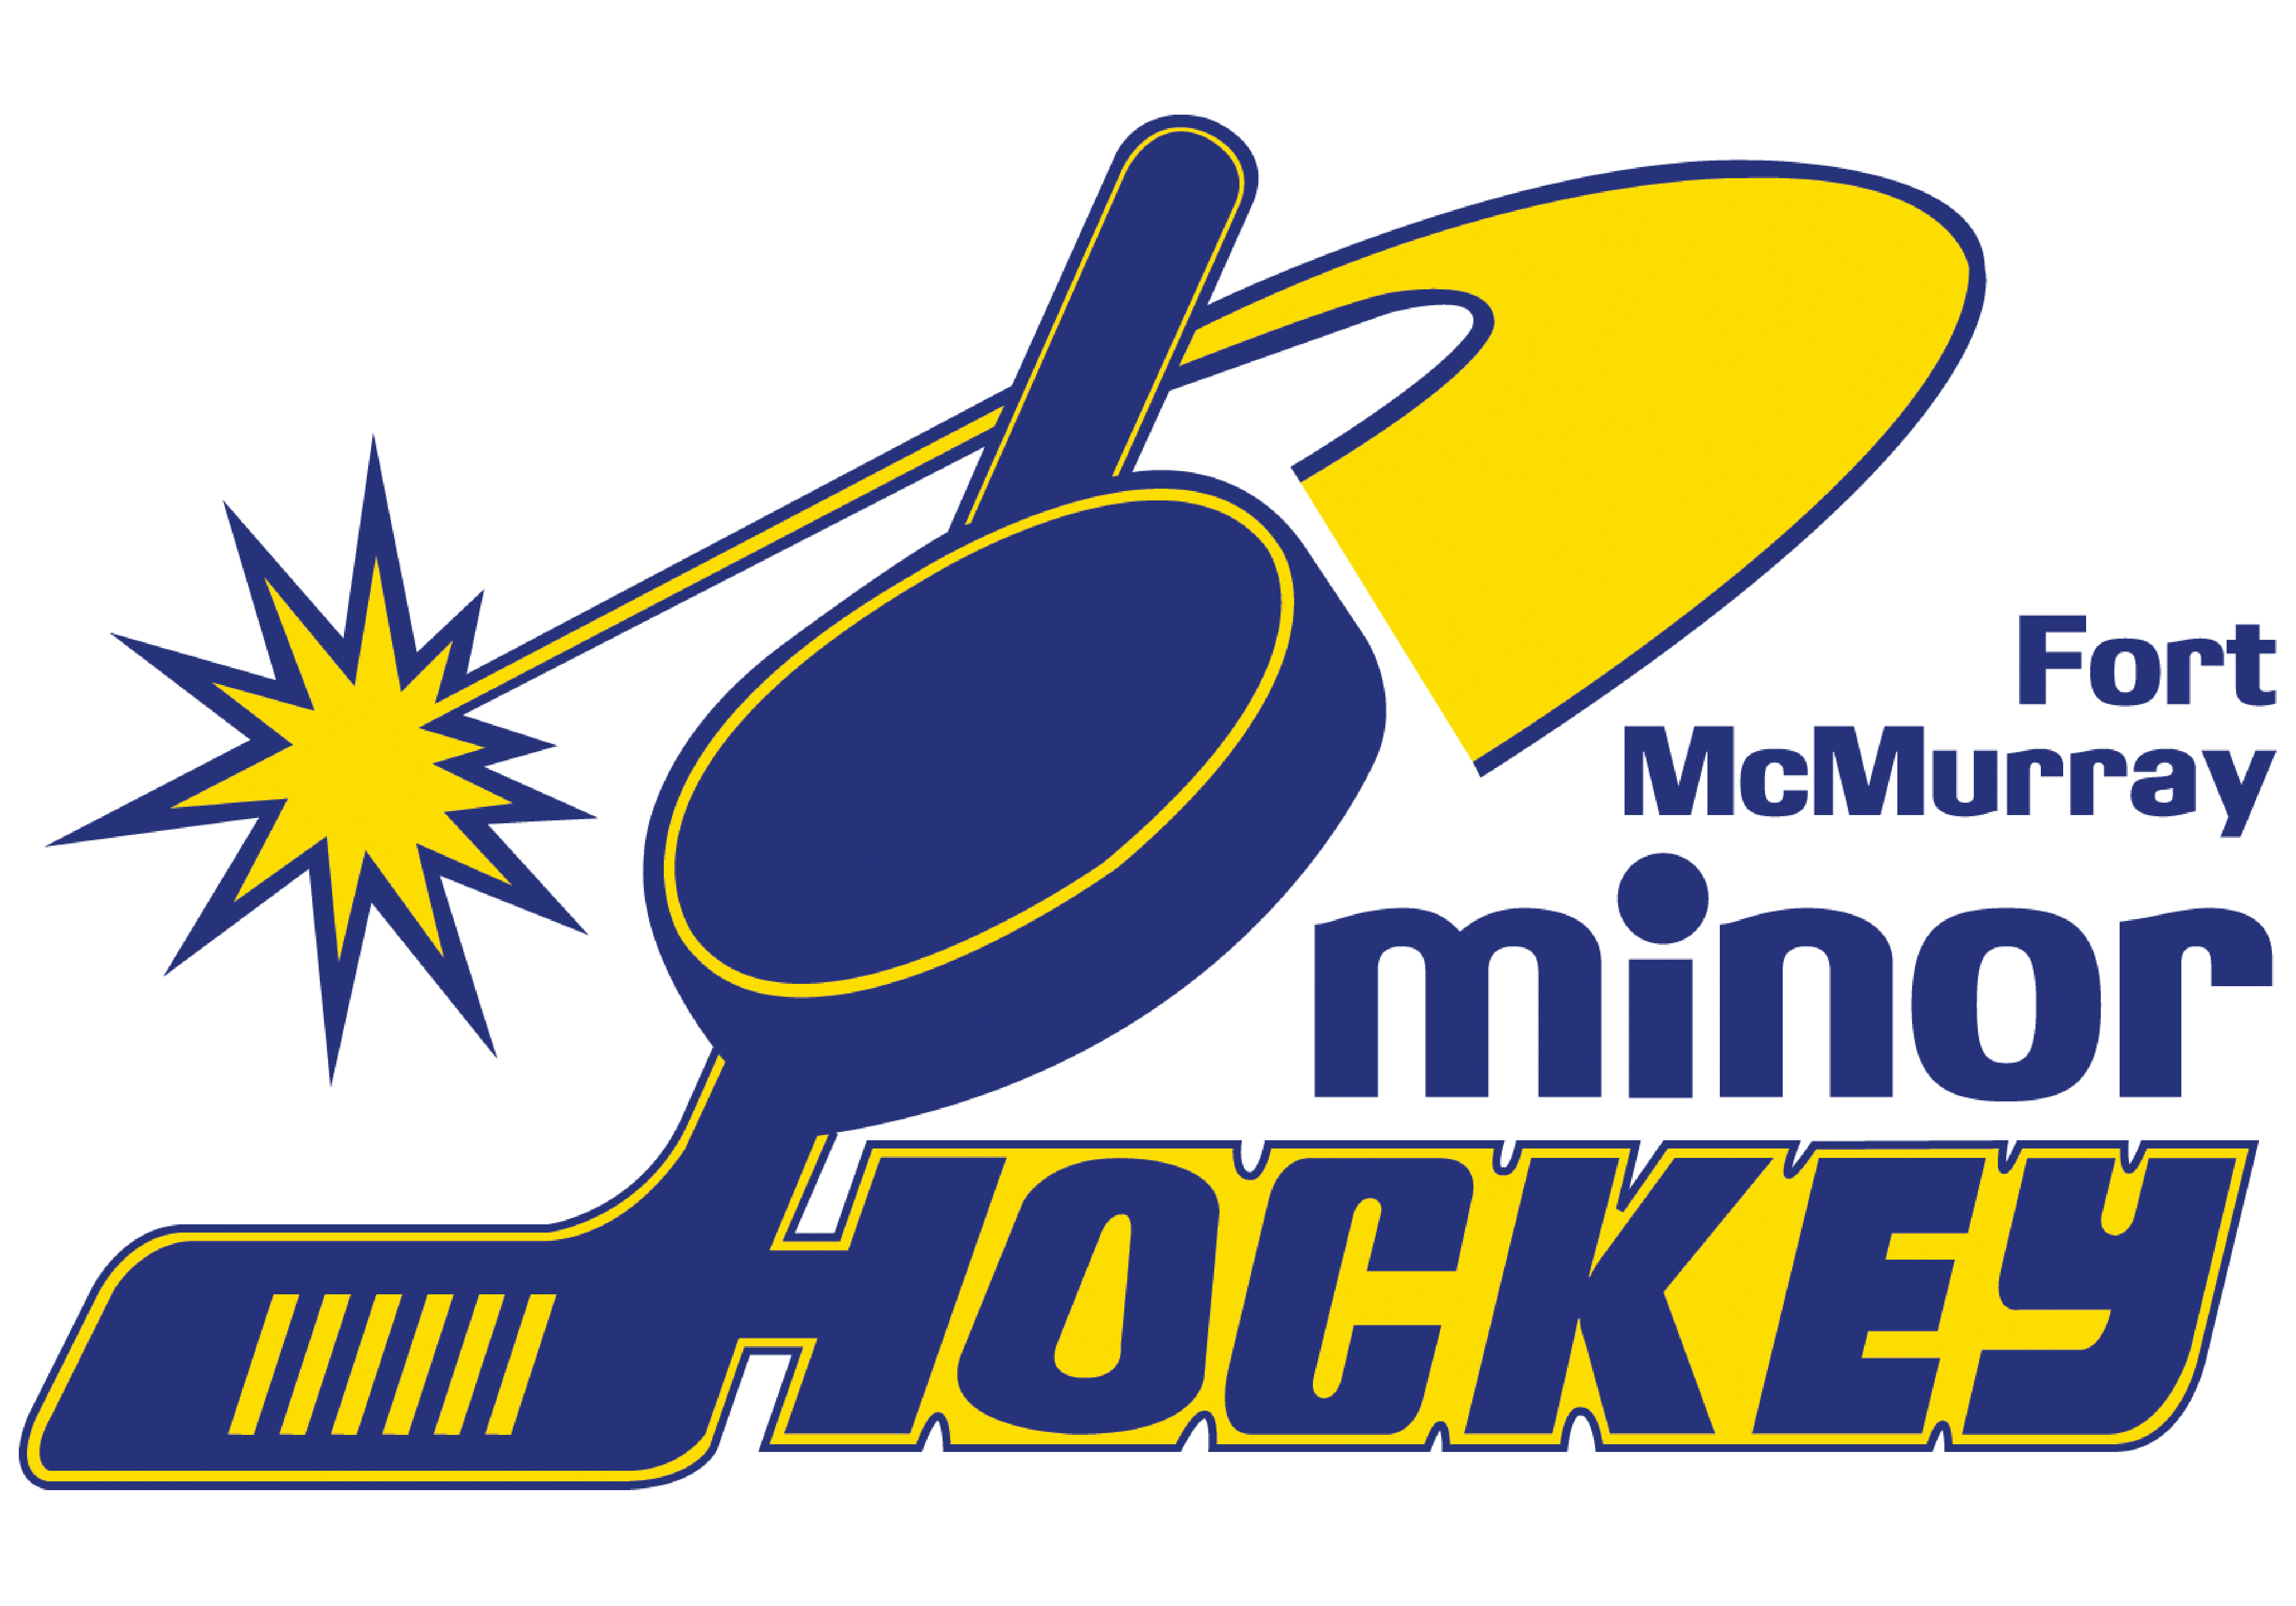 fort mcmurray minor hockey association logo